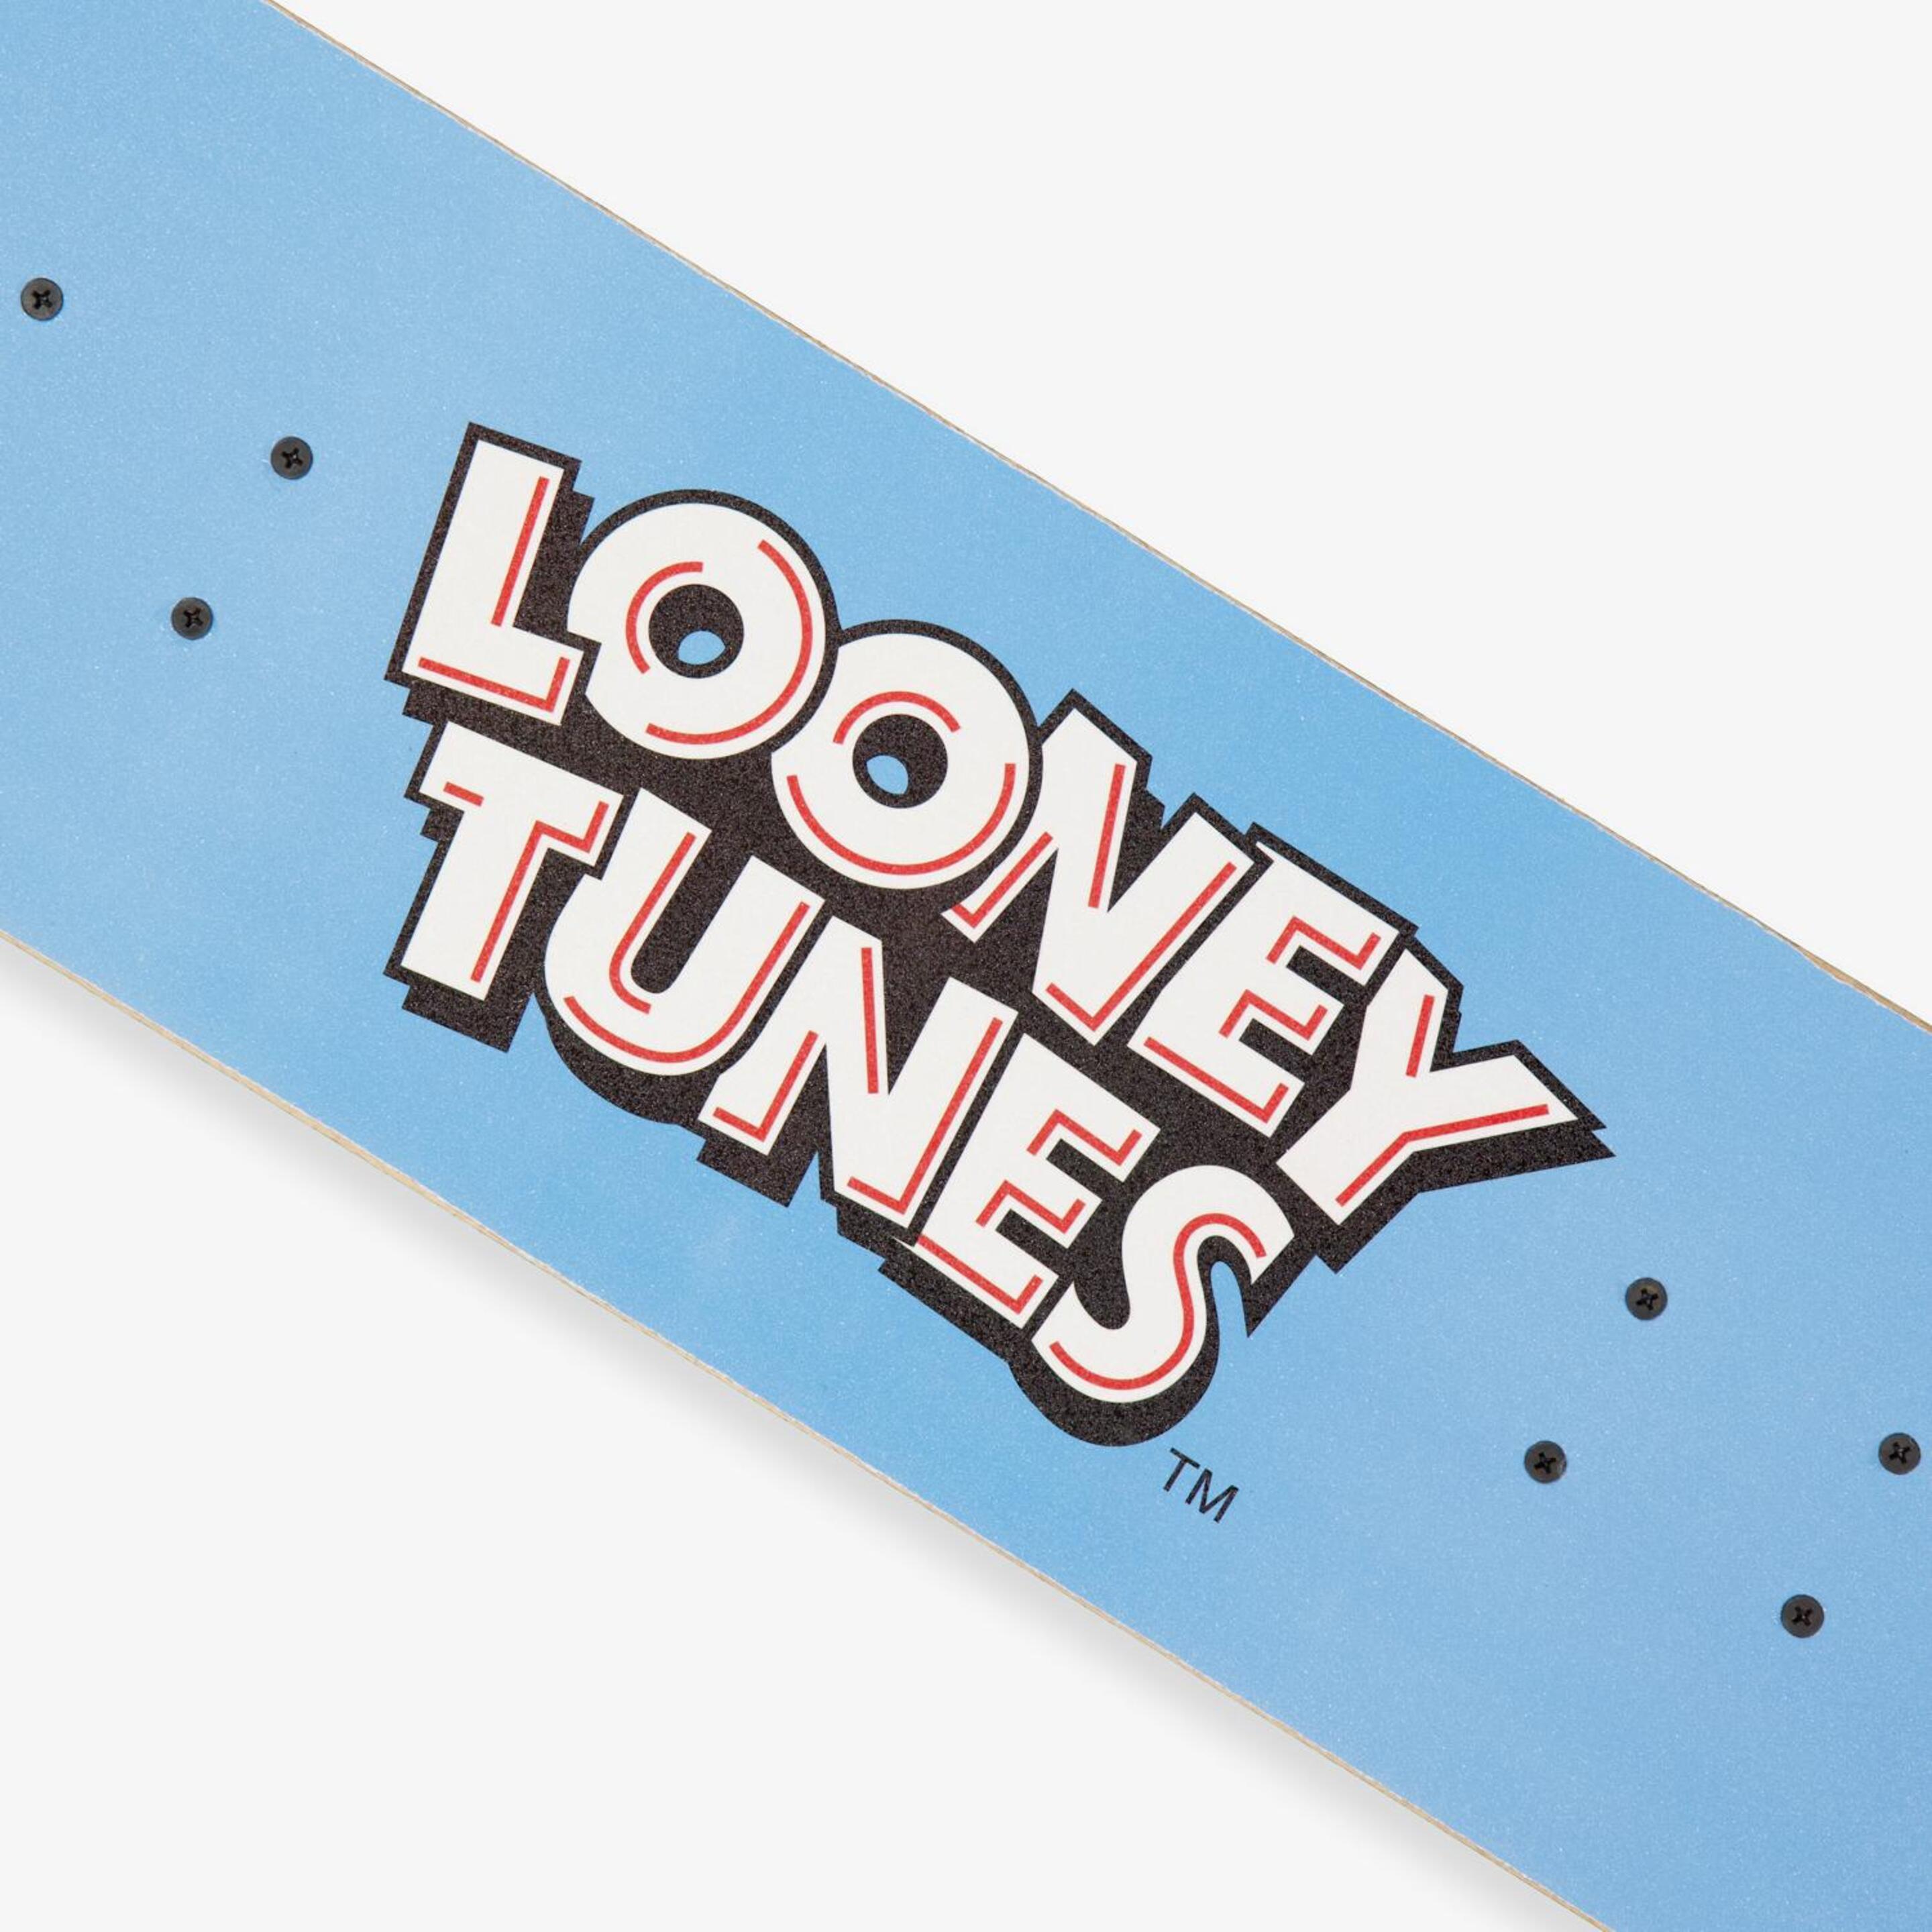 Tabla Looney Tunes - Colores - Tabla Skate